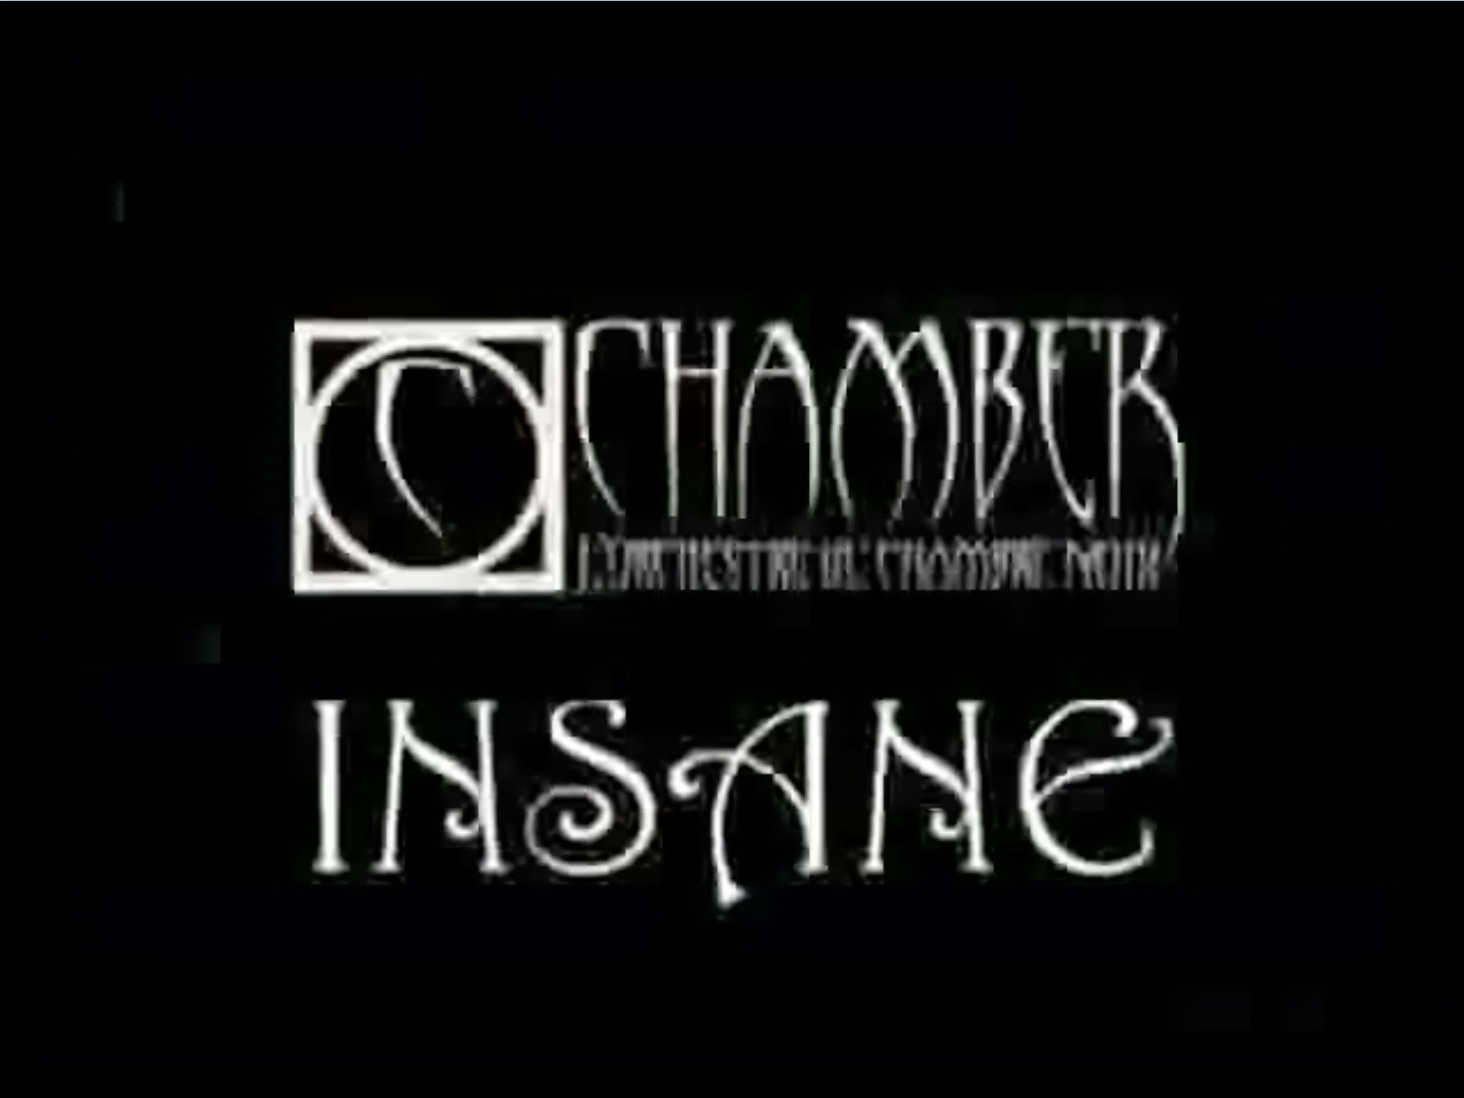 Chamber - Insane